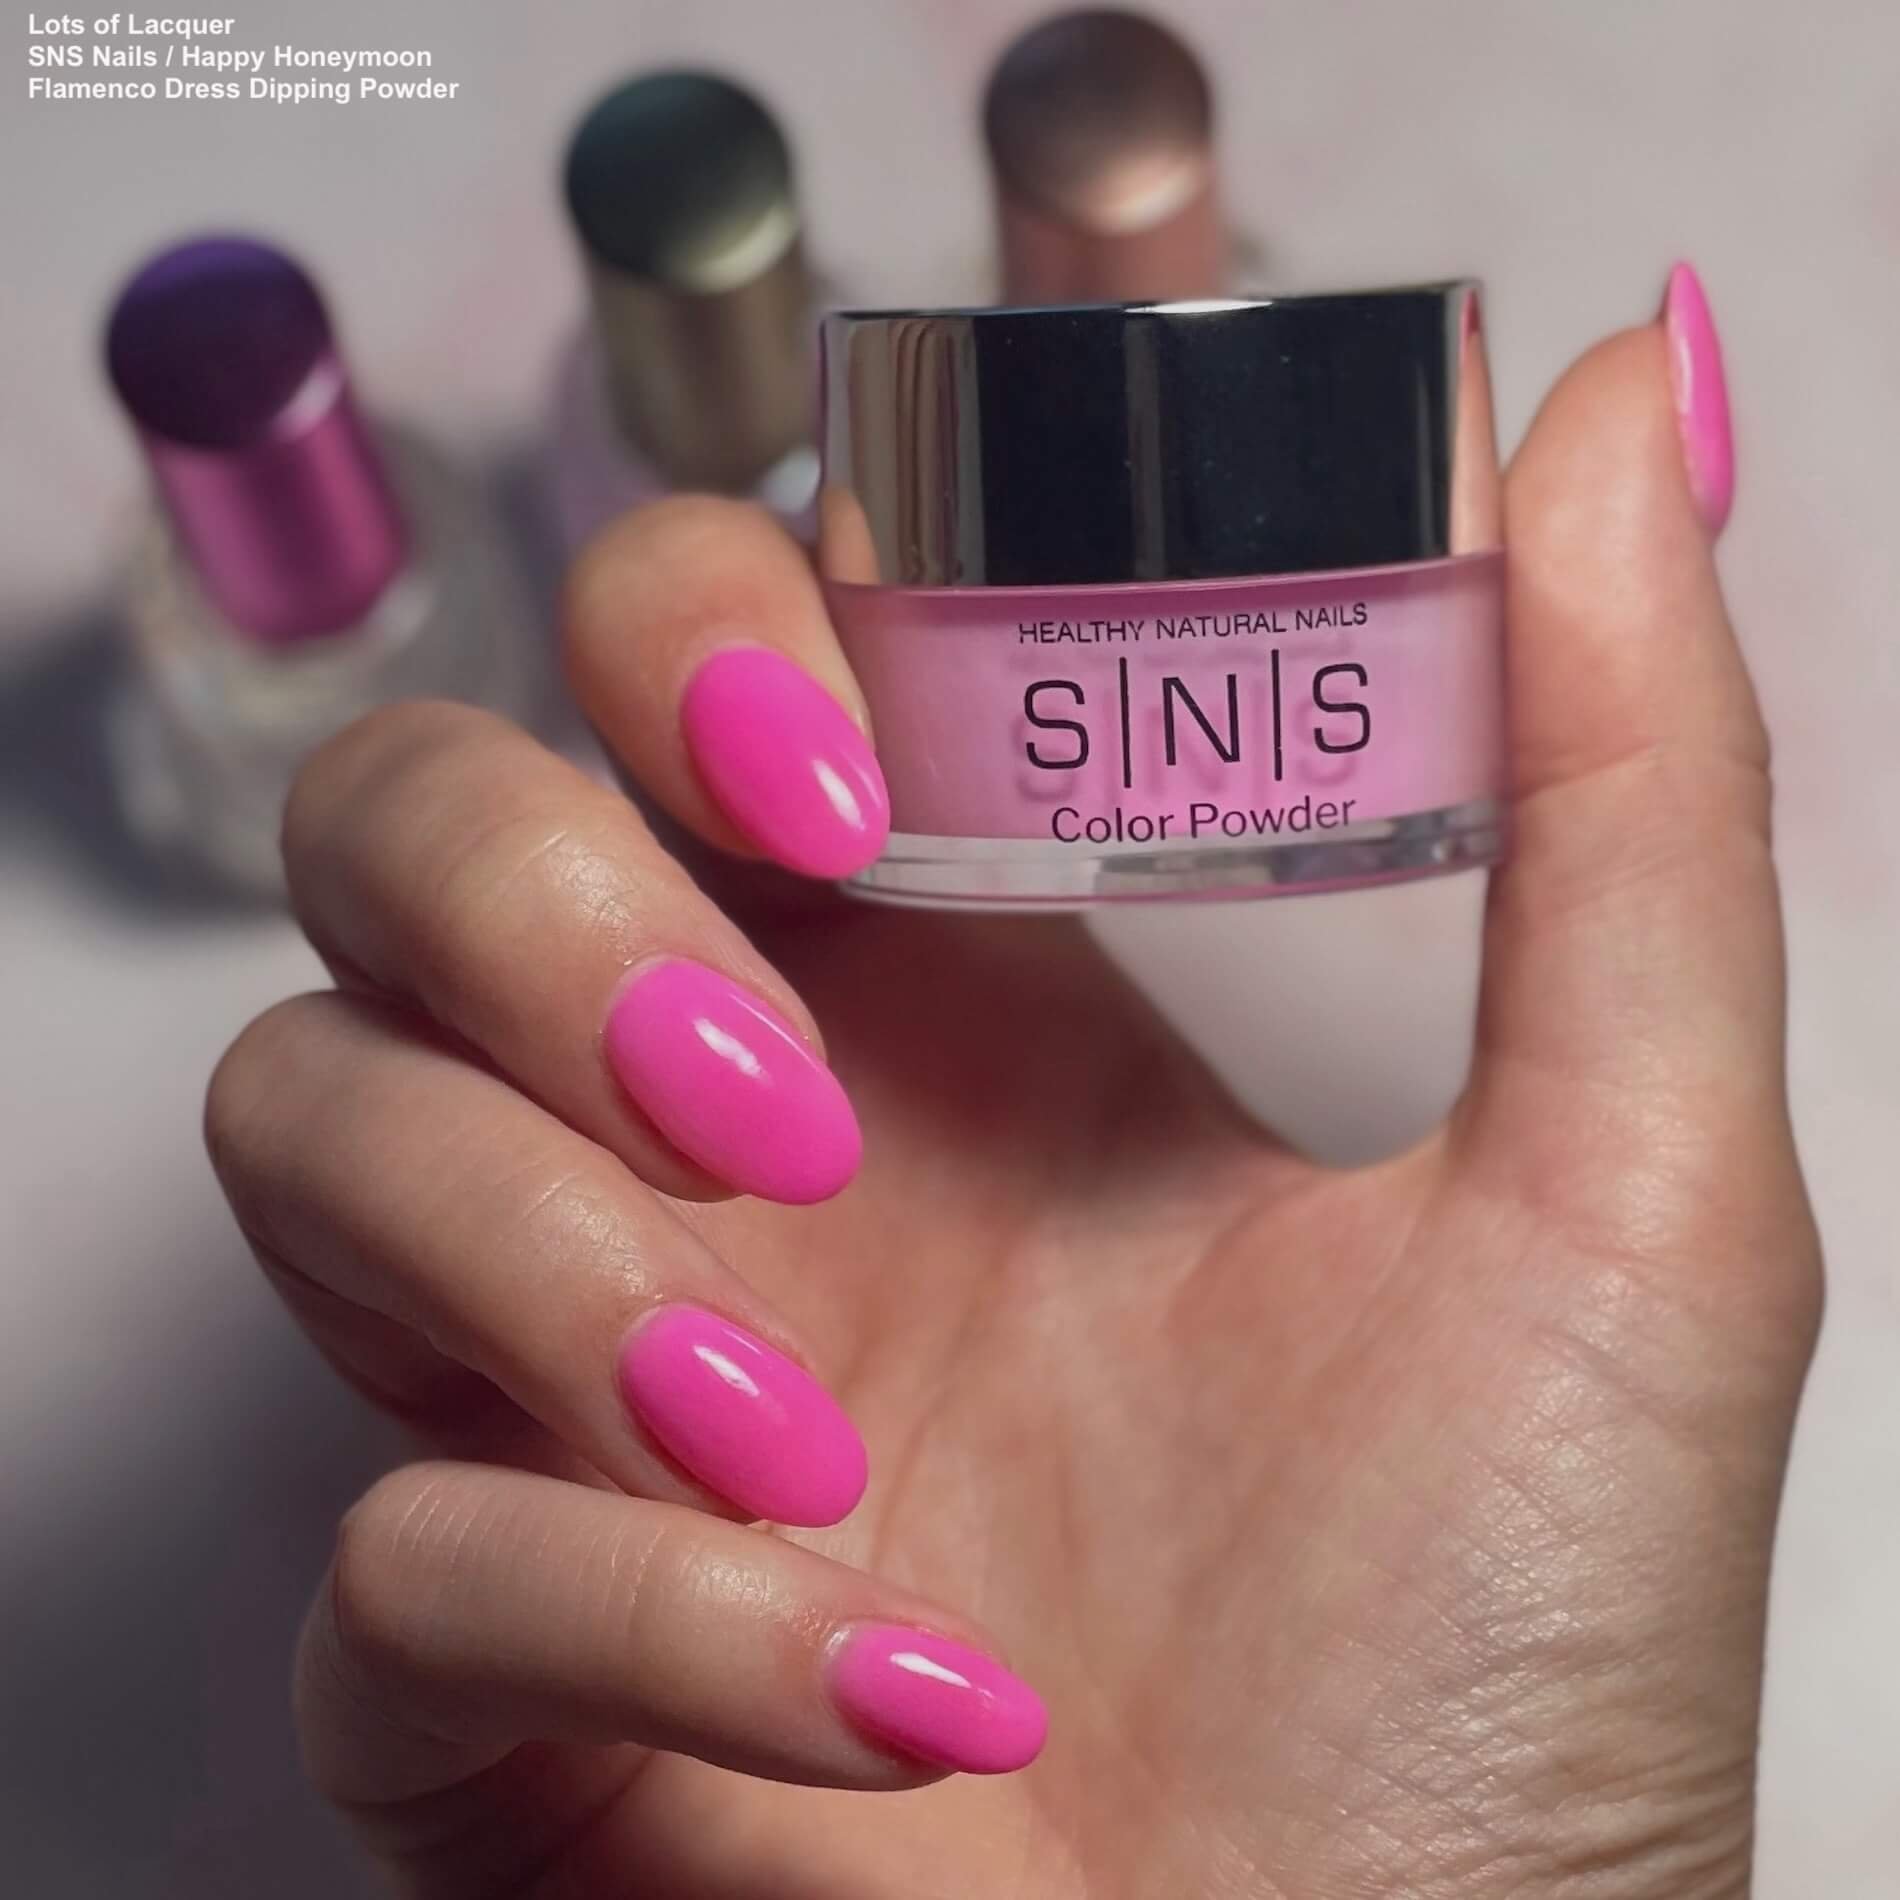 SNS Spring Nails | Nails, Dipped nails, Sns nails colors